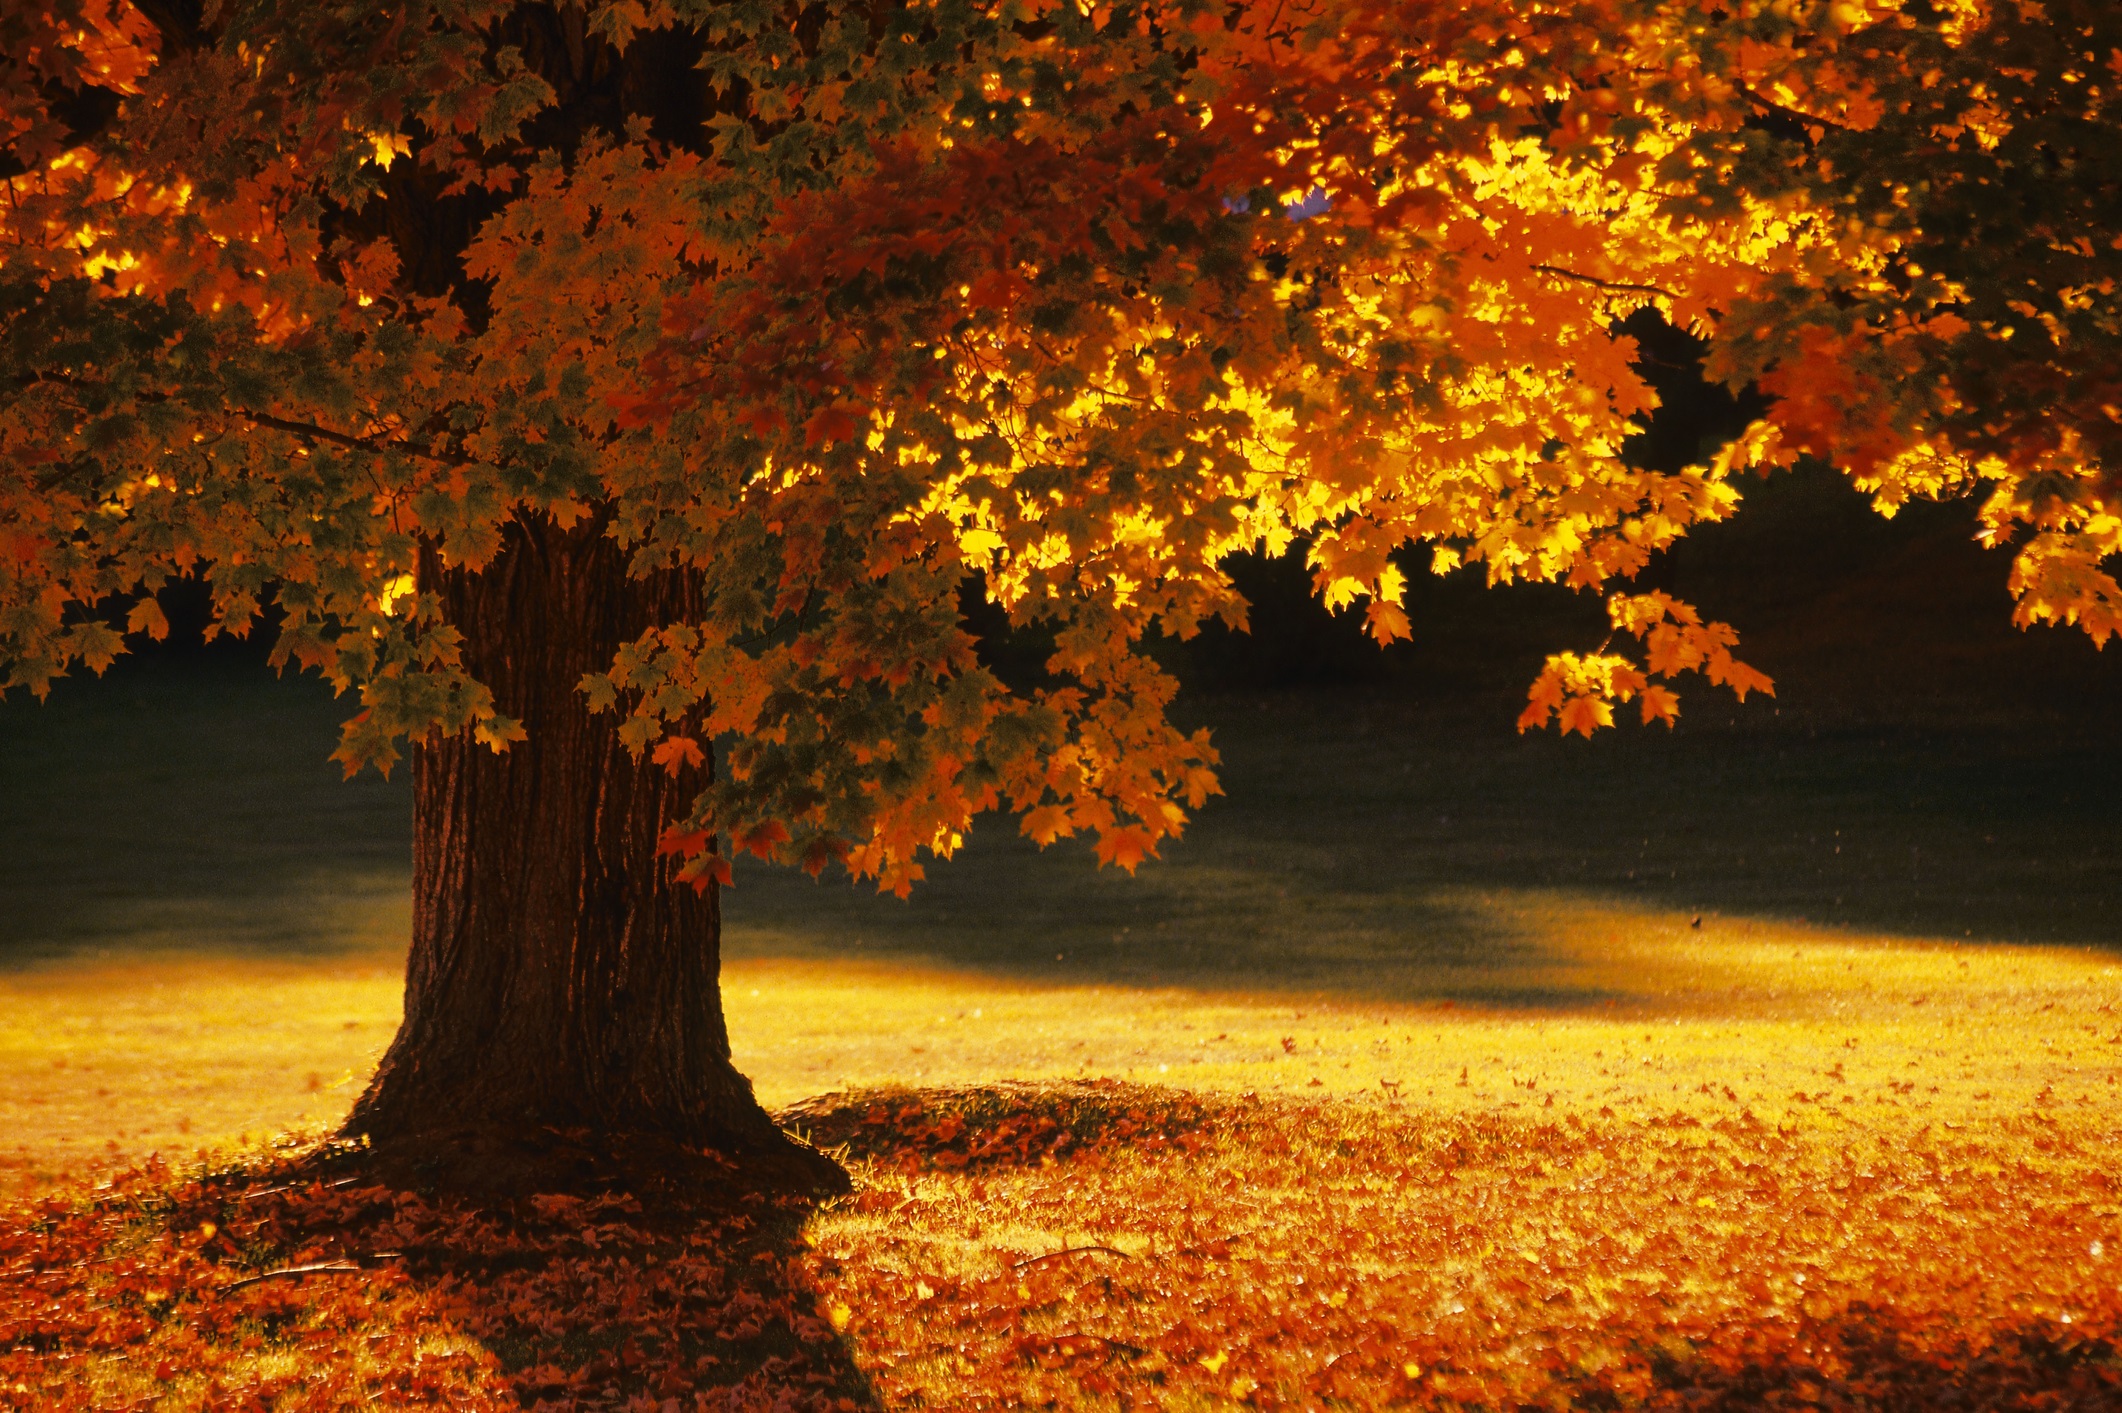 Есента настъпва съвсем скоро - навръх националния празник 22 септември. Мнозина страдат по отминалото лято, но есетна също има своят чар и ни предлага много красиви гледки